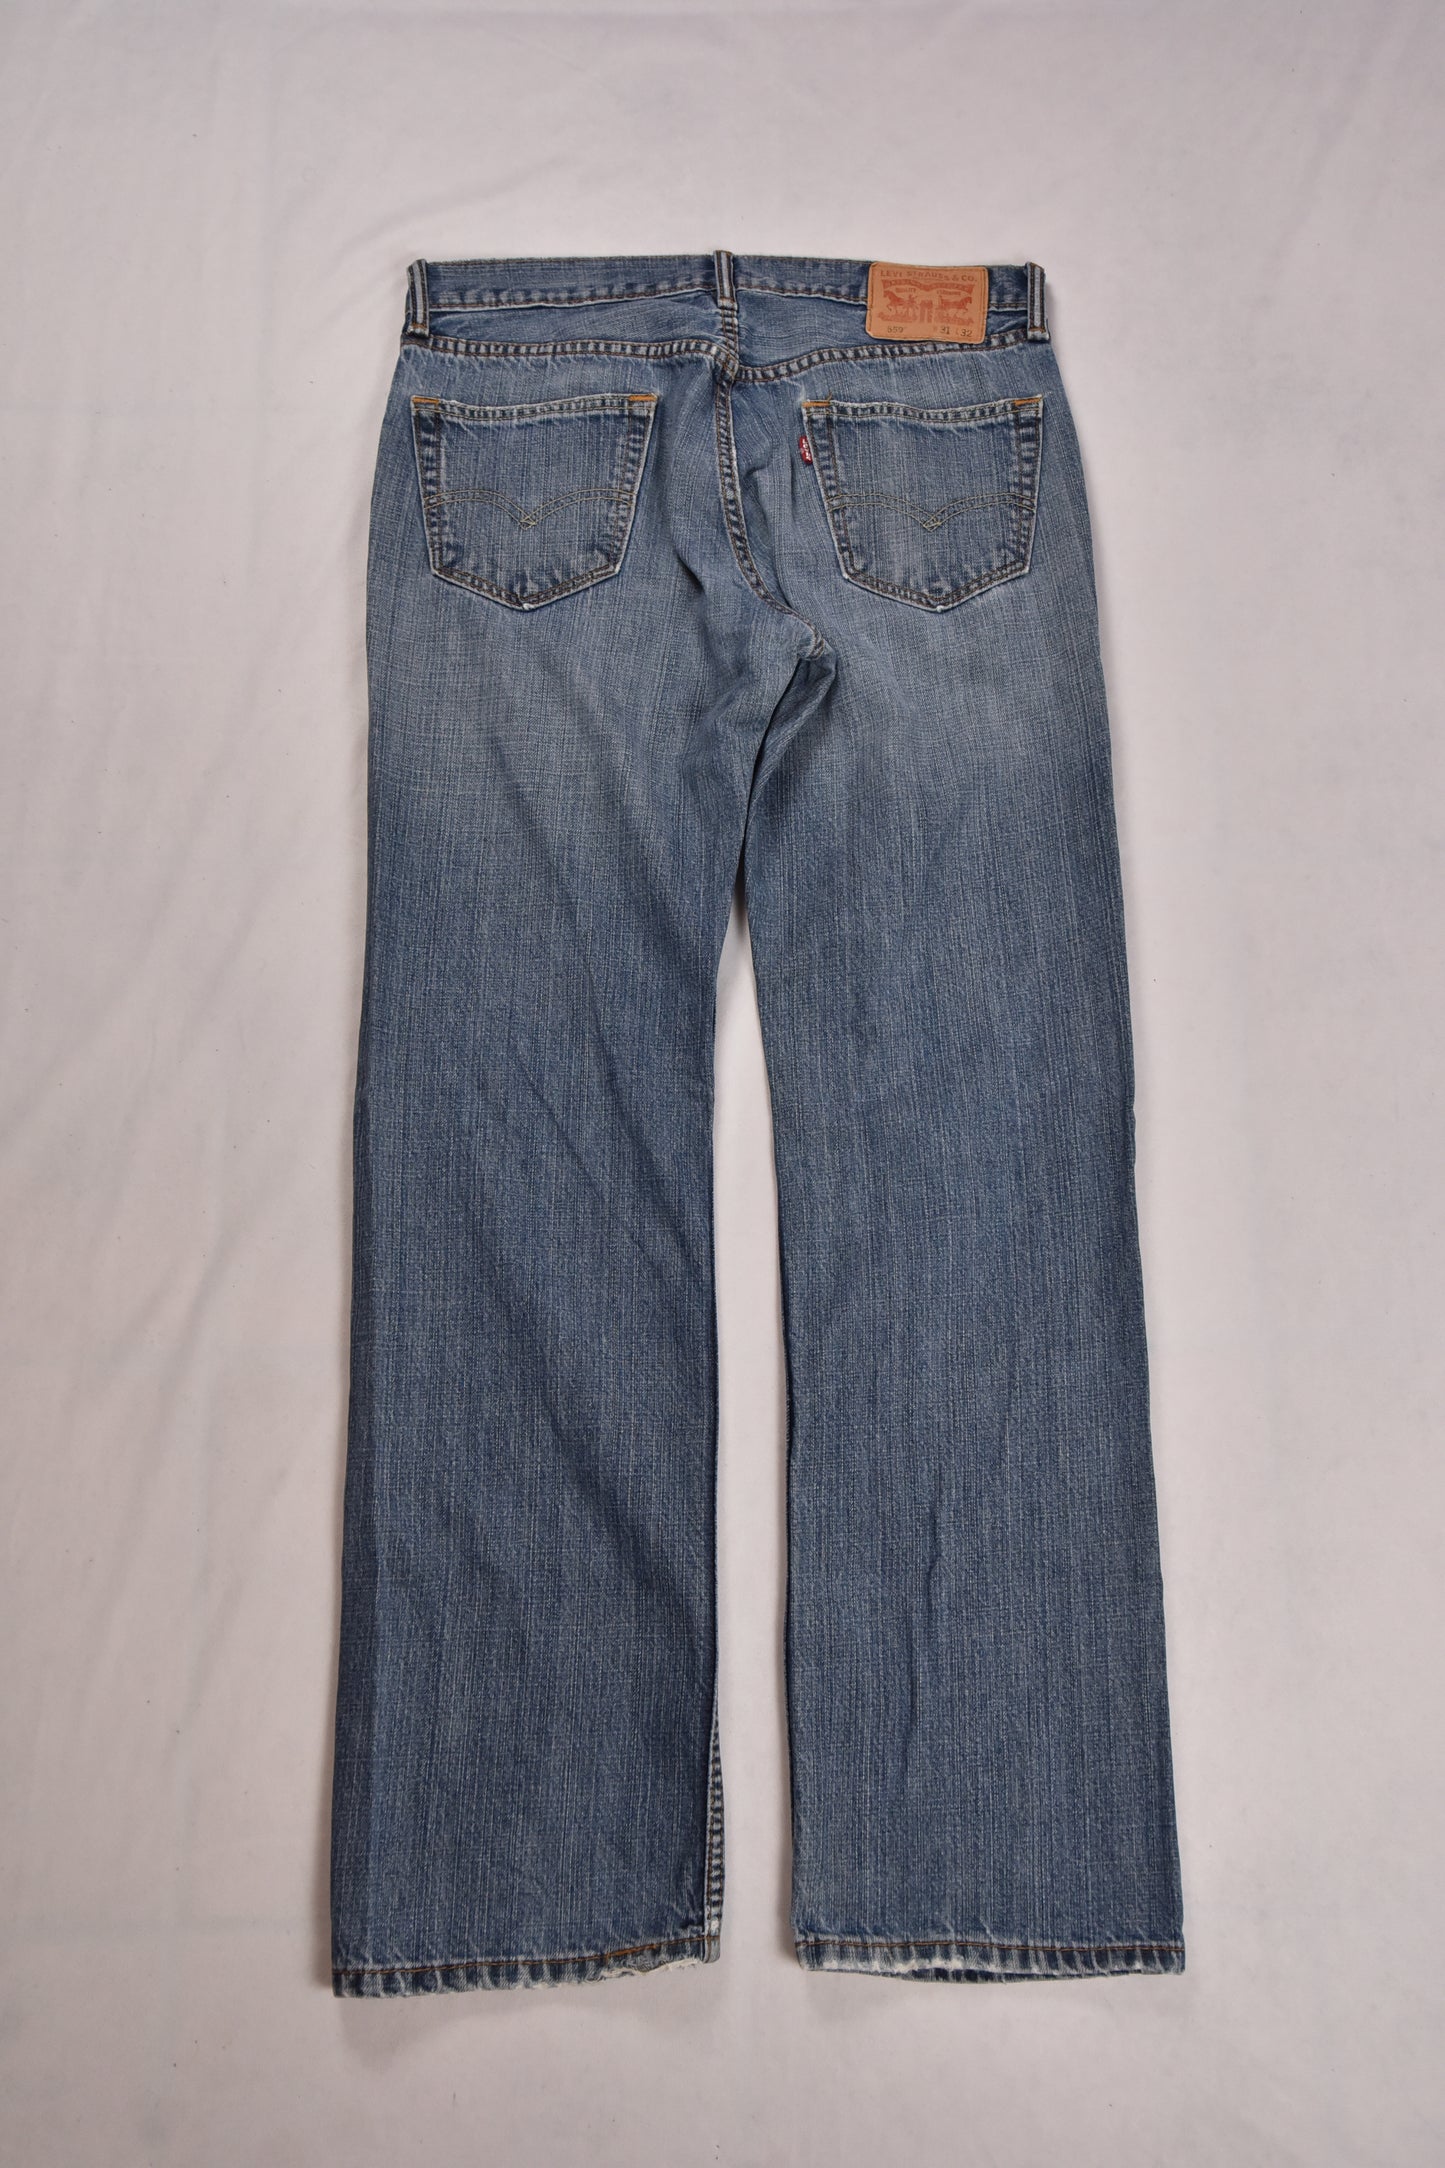 Levi's 559 Jeans / 31x32